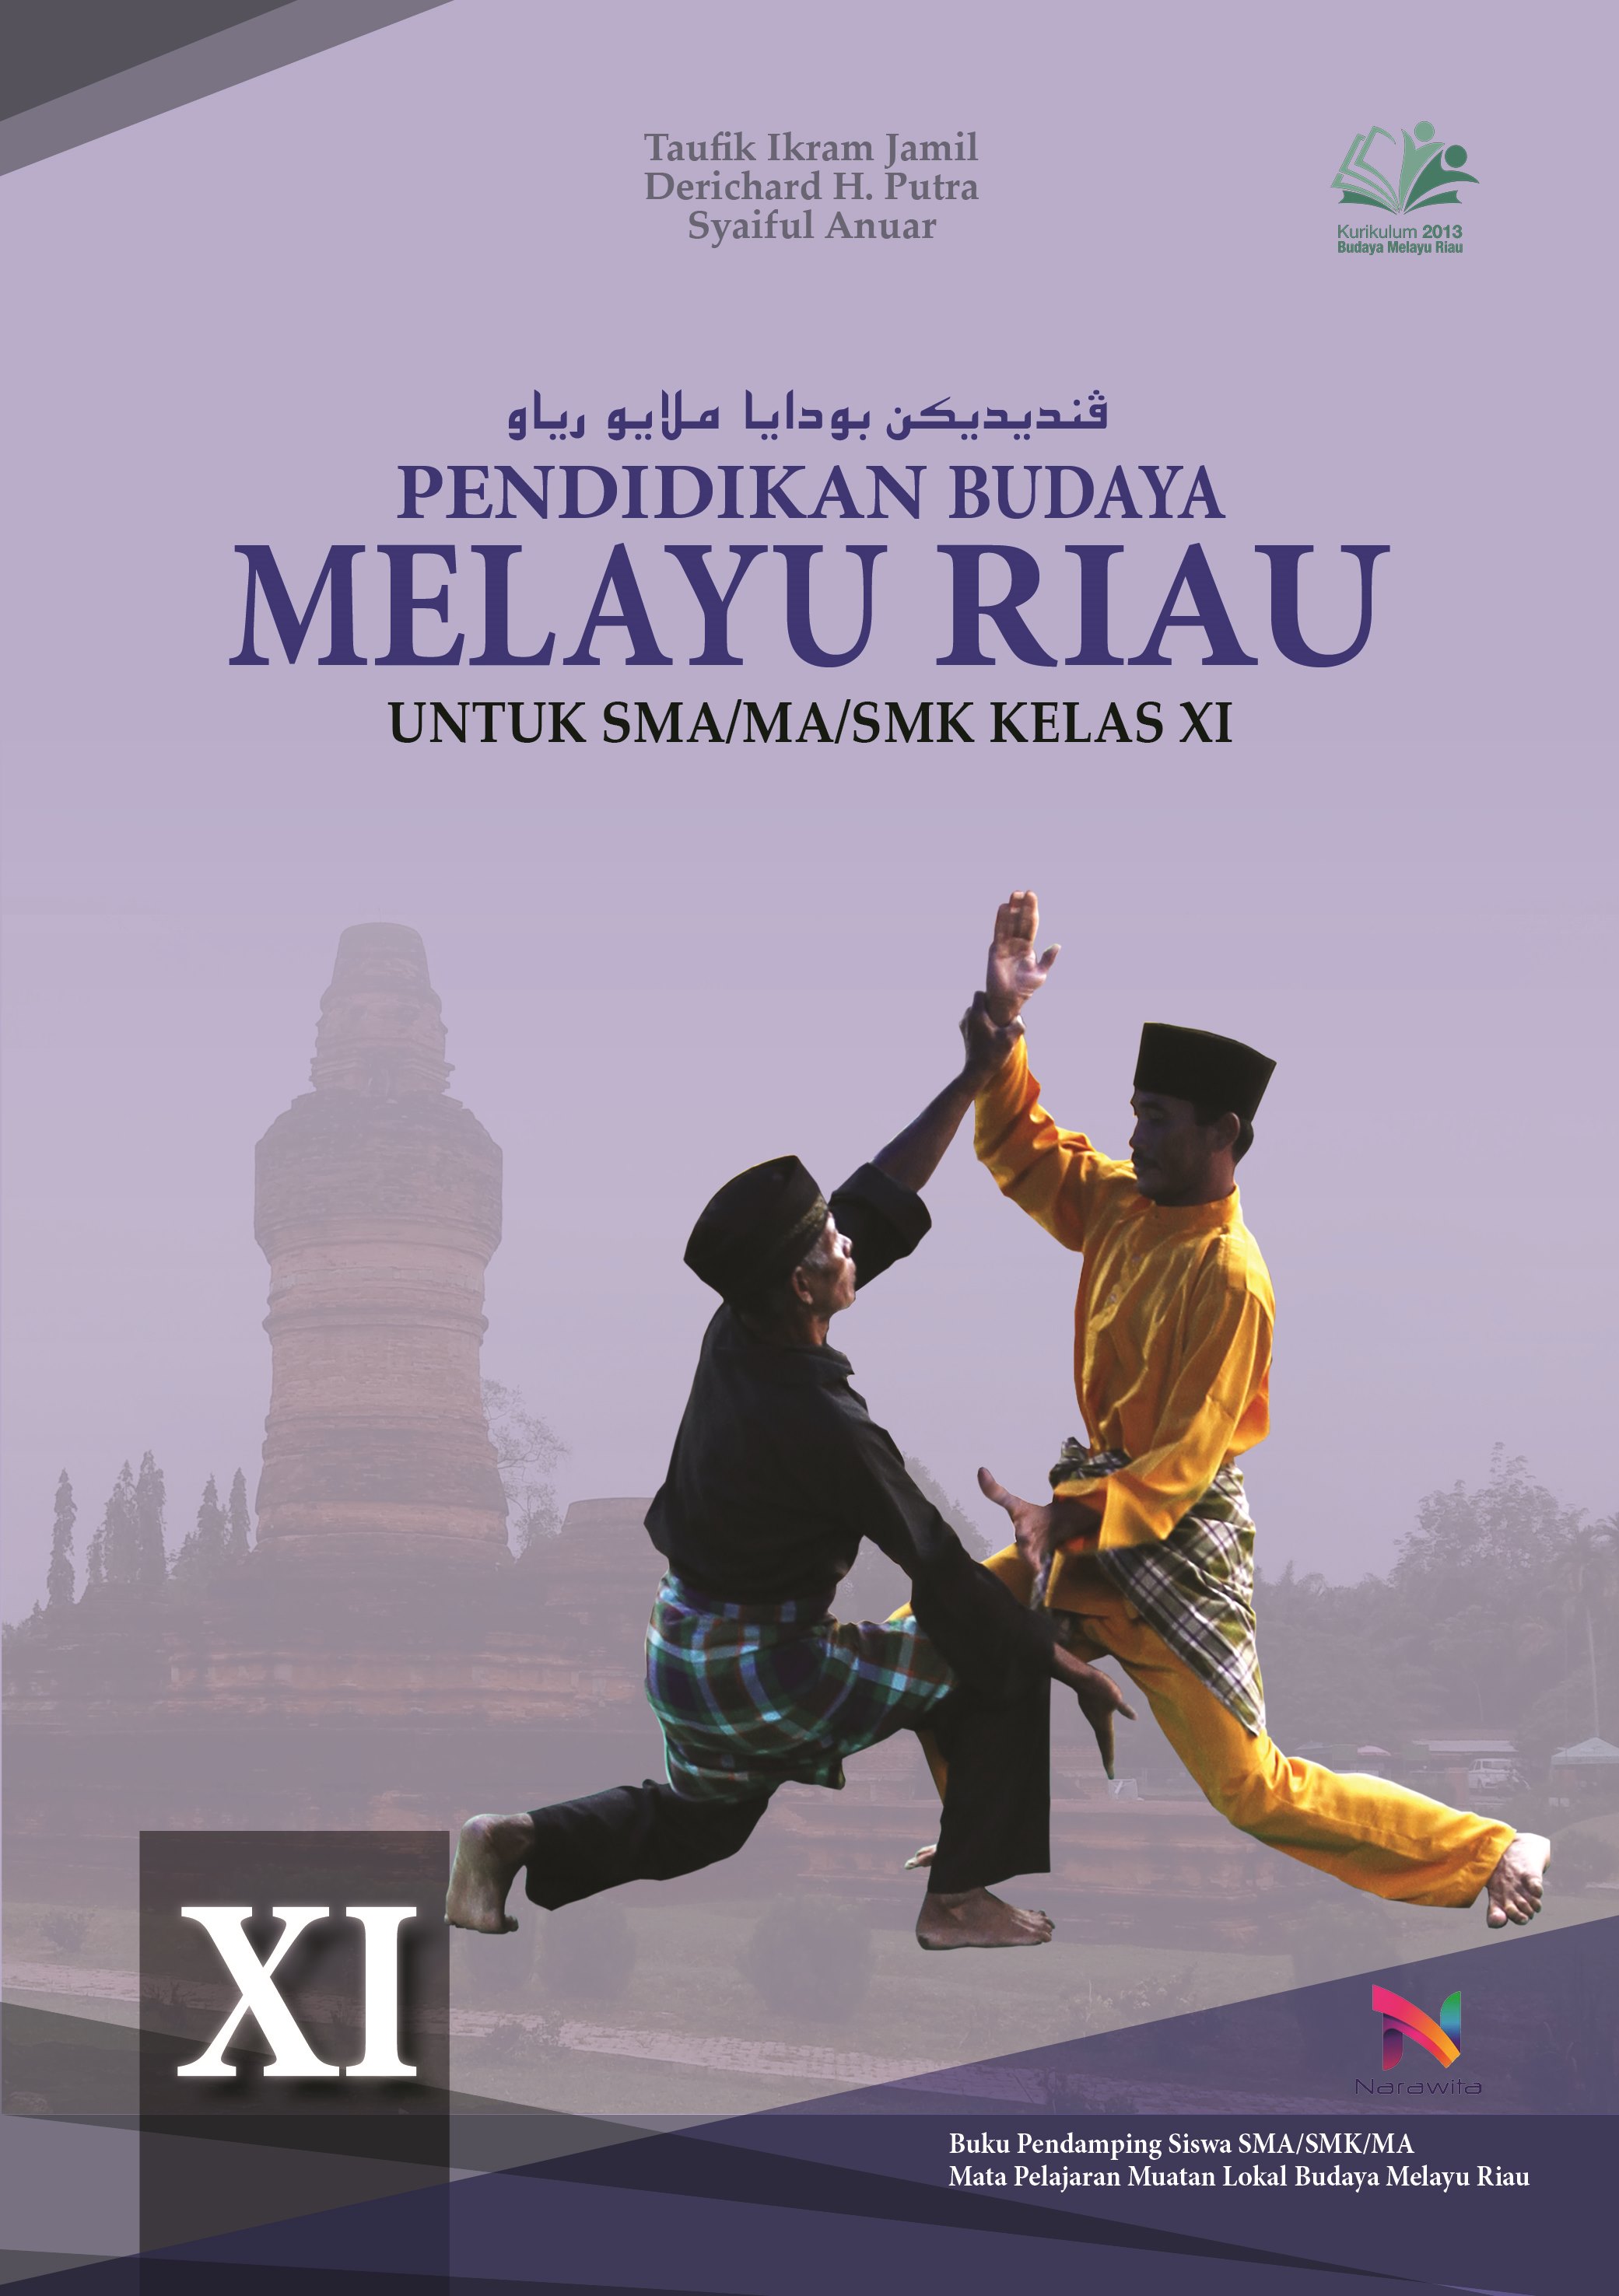 Soal Budaya Melayu Riau Kelas 11 Beserta Jawaban Jawaban